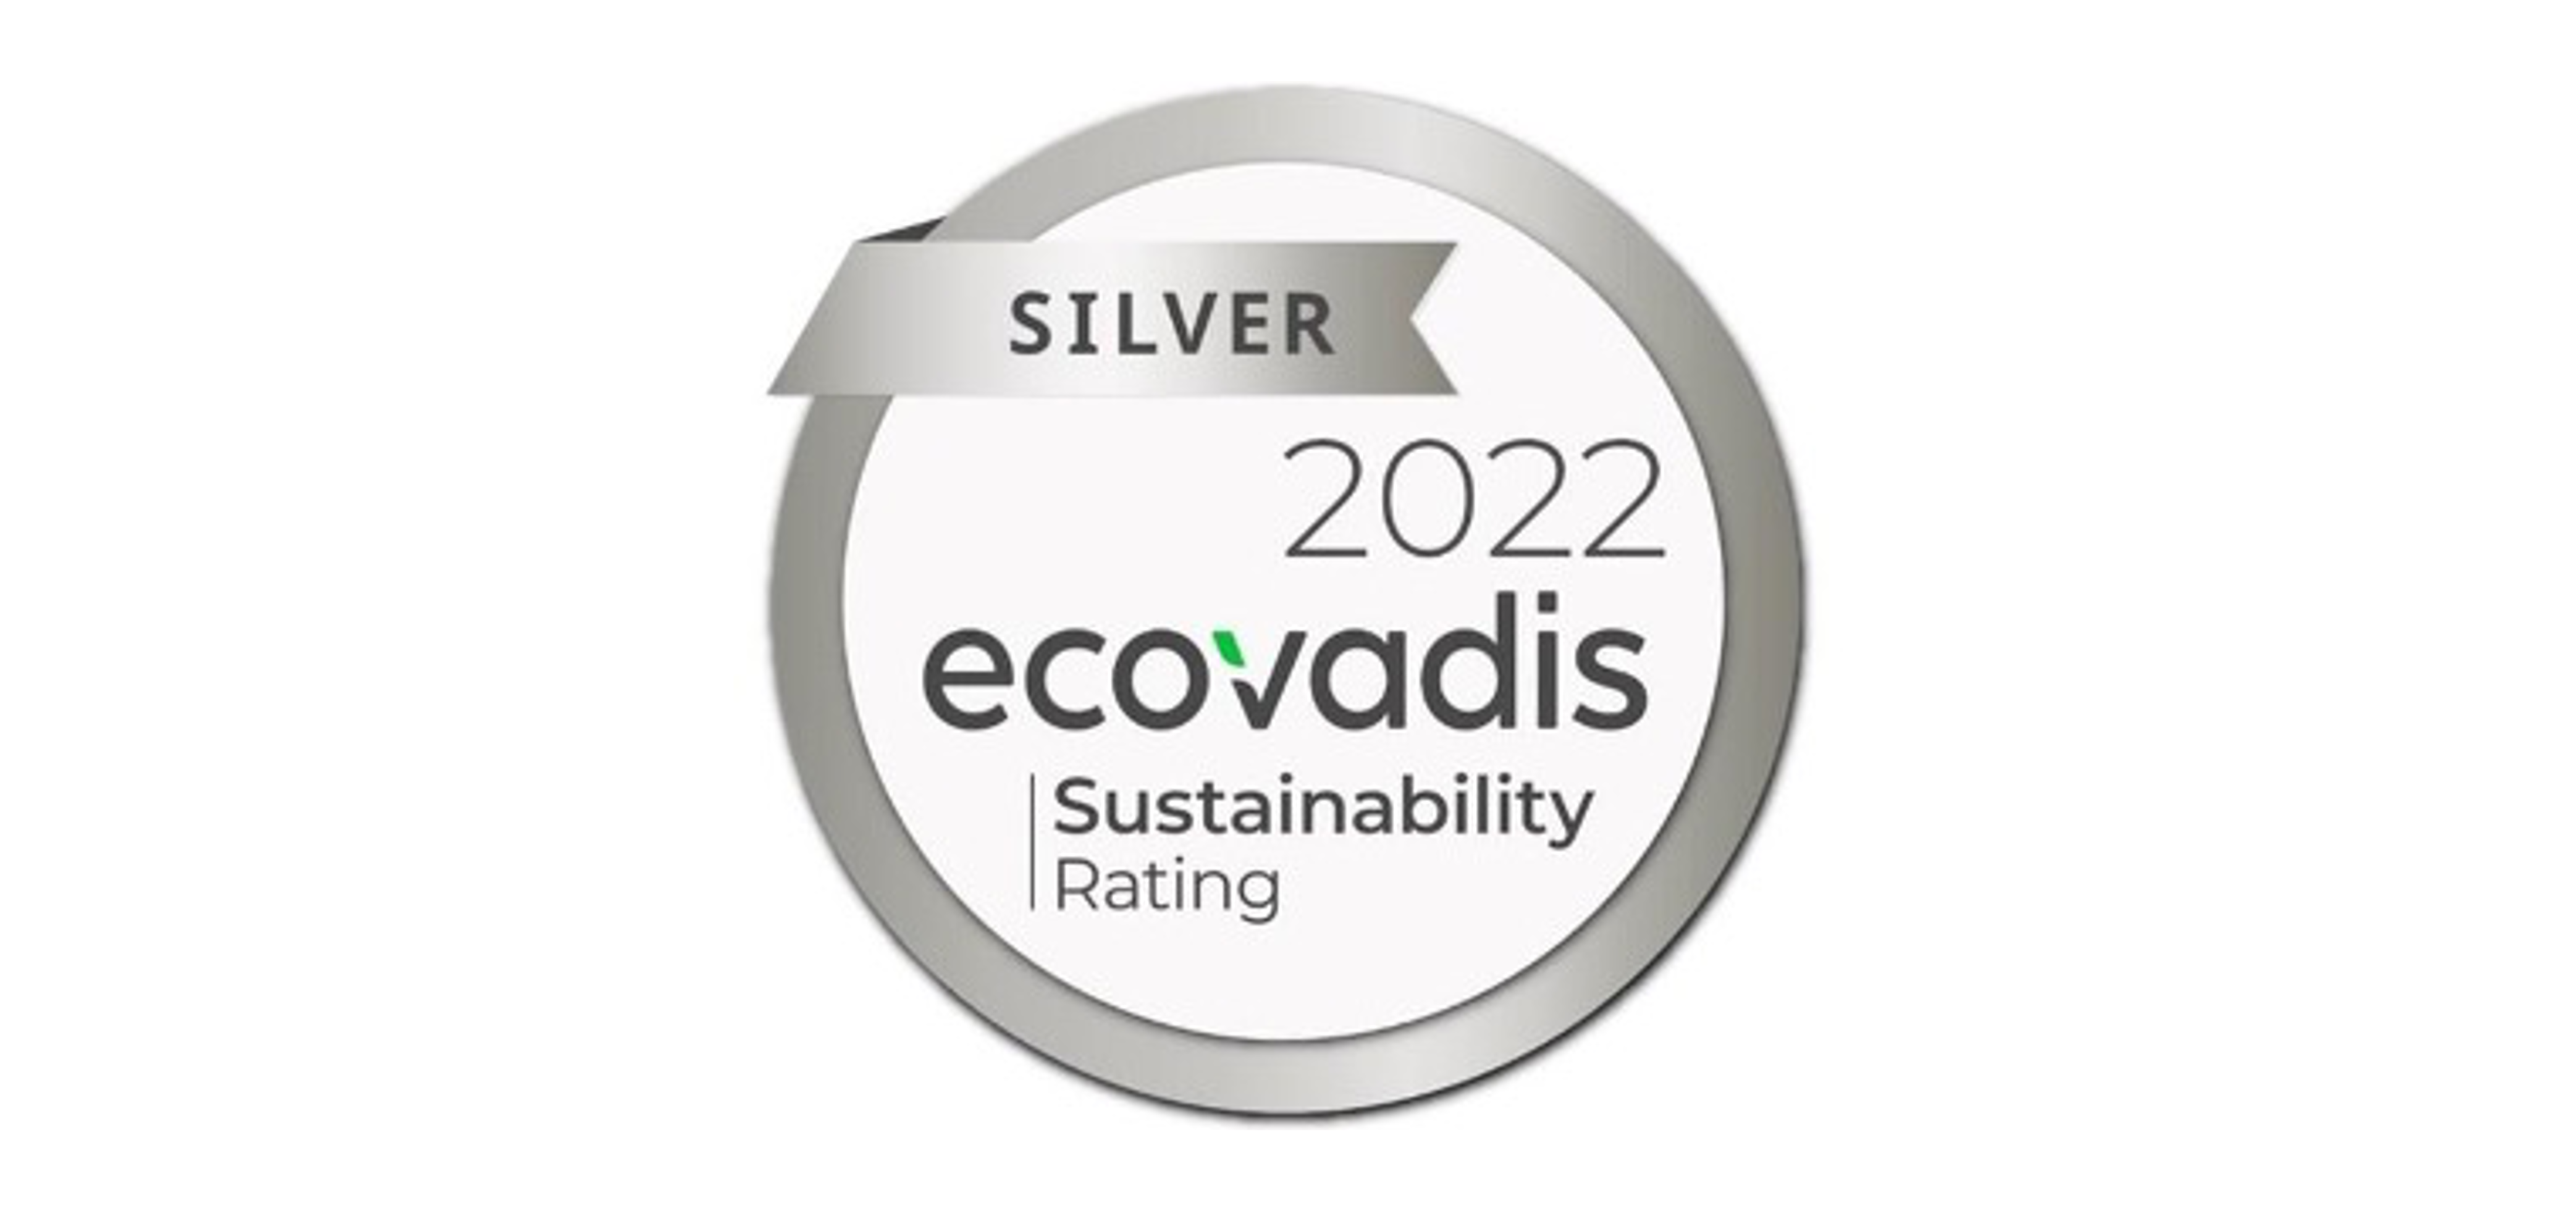 ecovadis silver 2022 kazan logo